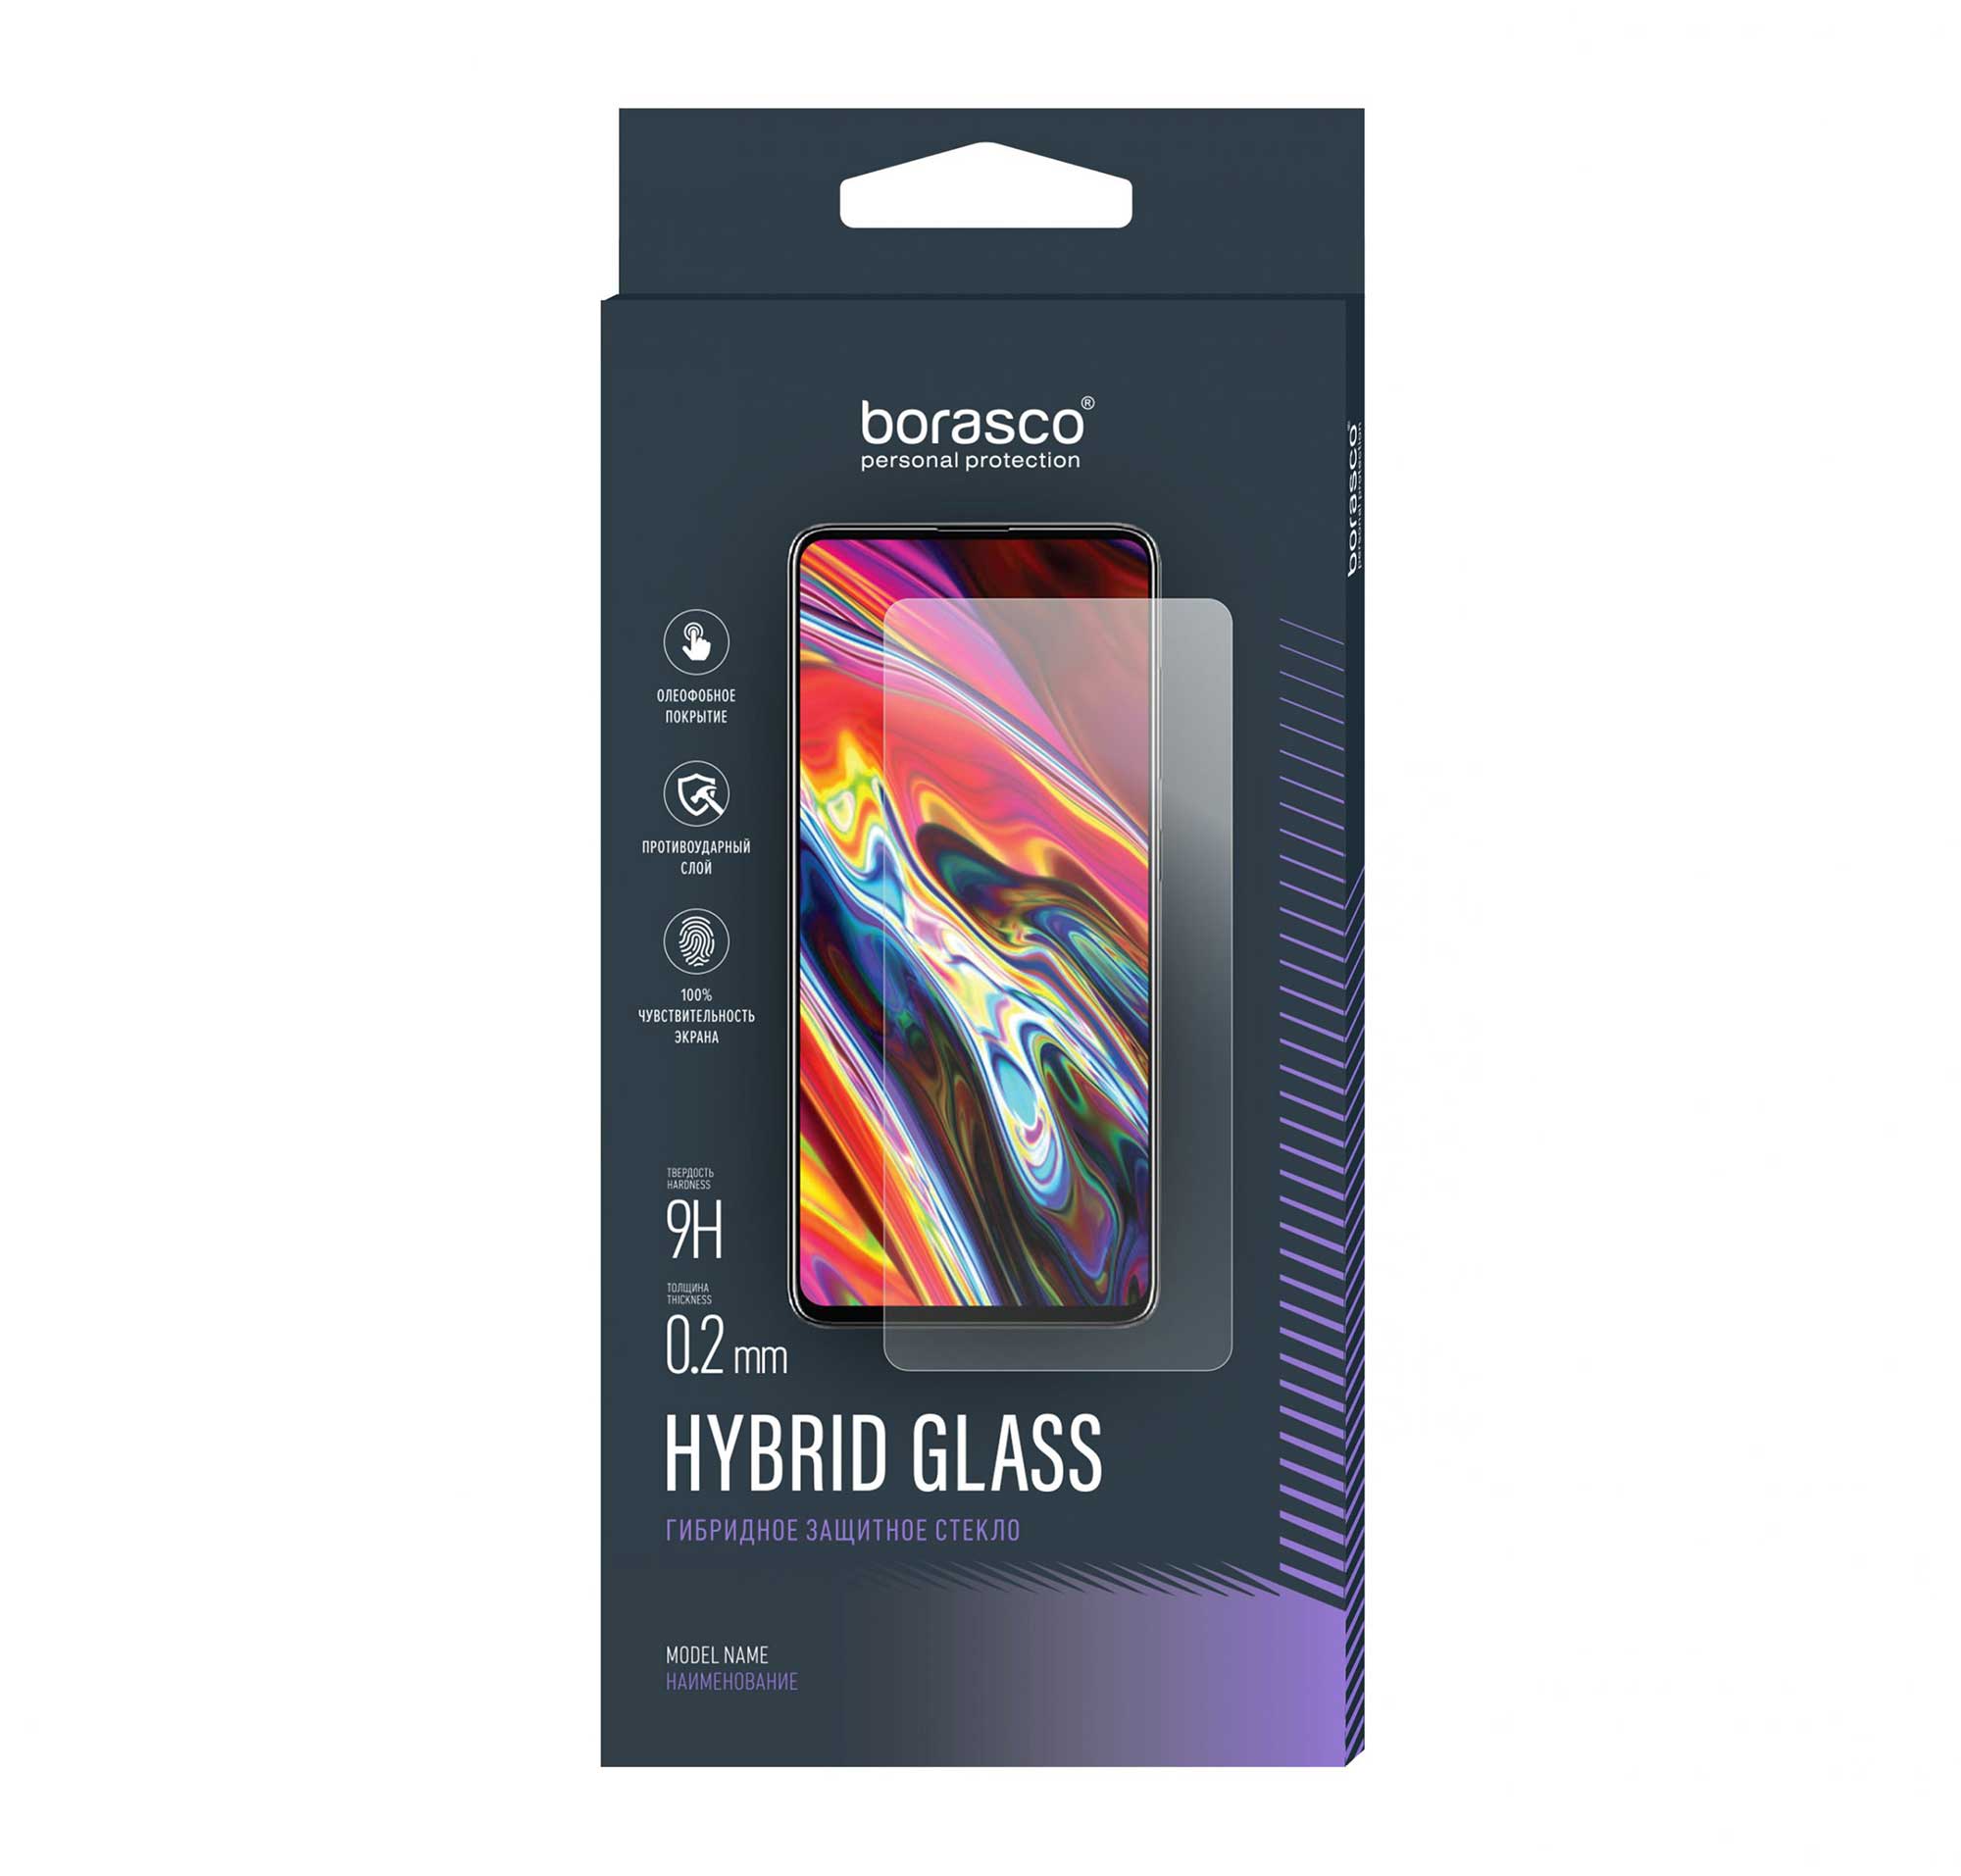 Защитное стекло BoraSCO Hybrid Glass для BQ 5016G Choice/ 5046L Choice LTE для bq защитное стекло bq для bq 5016g choice bq 5046l choice lte